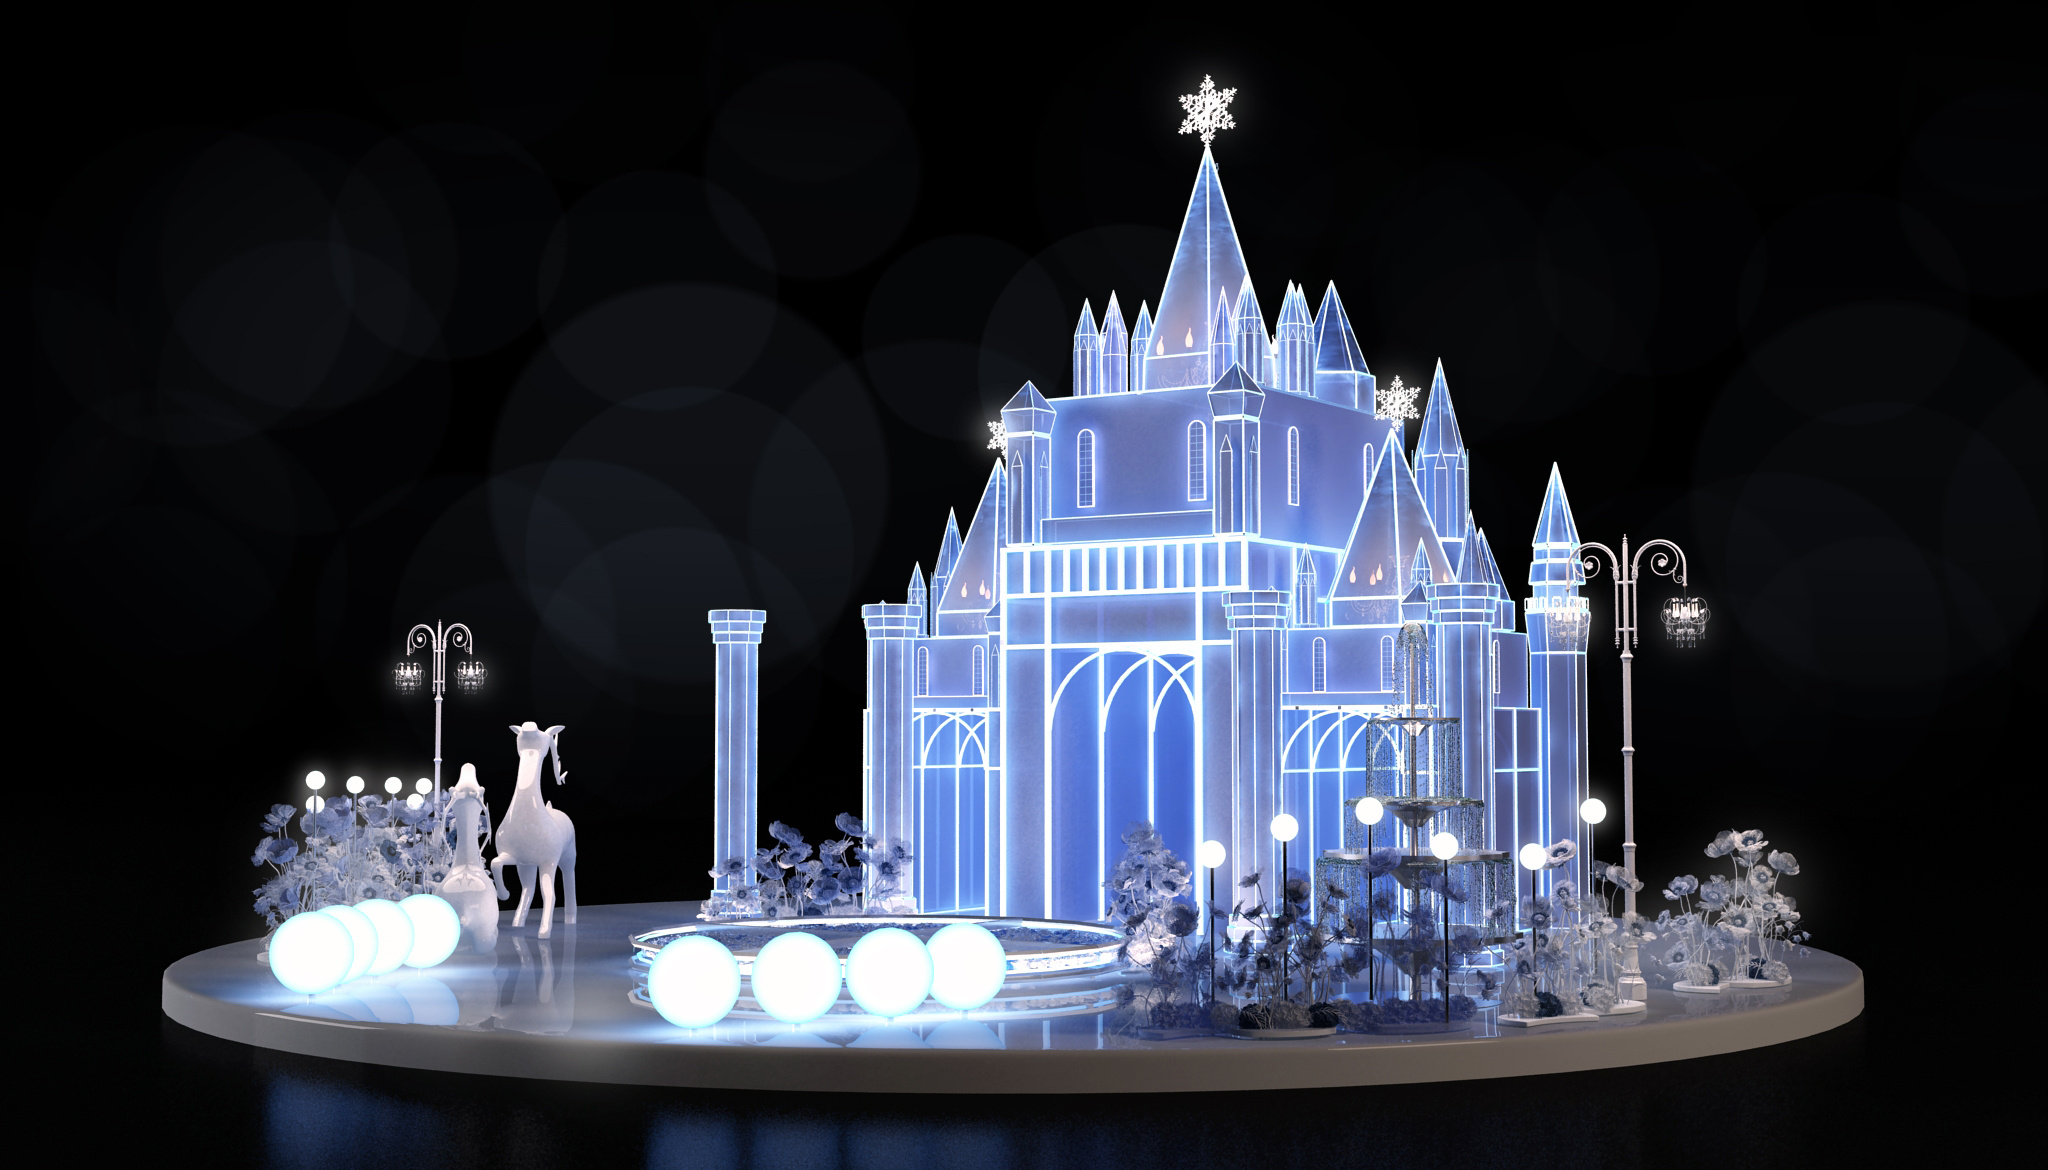 【展示】全国首个大型水晶城堡展 - 案例 - ONSITECLUB - 体验营销案例集锦